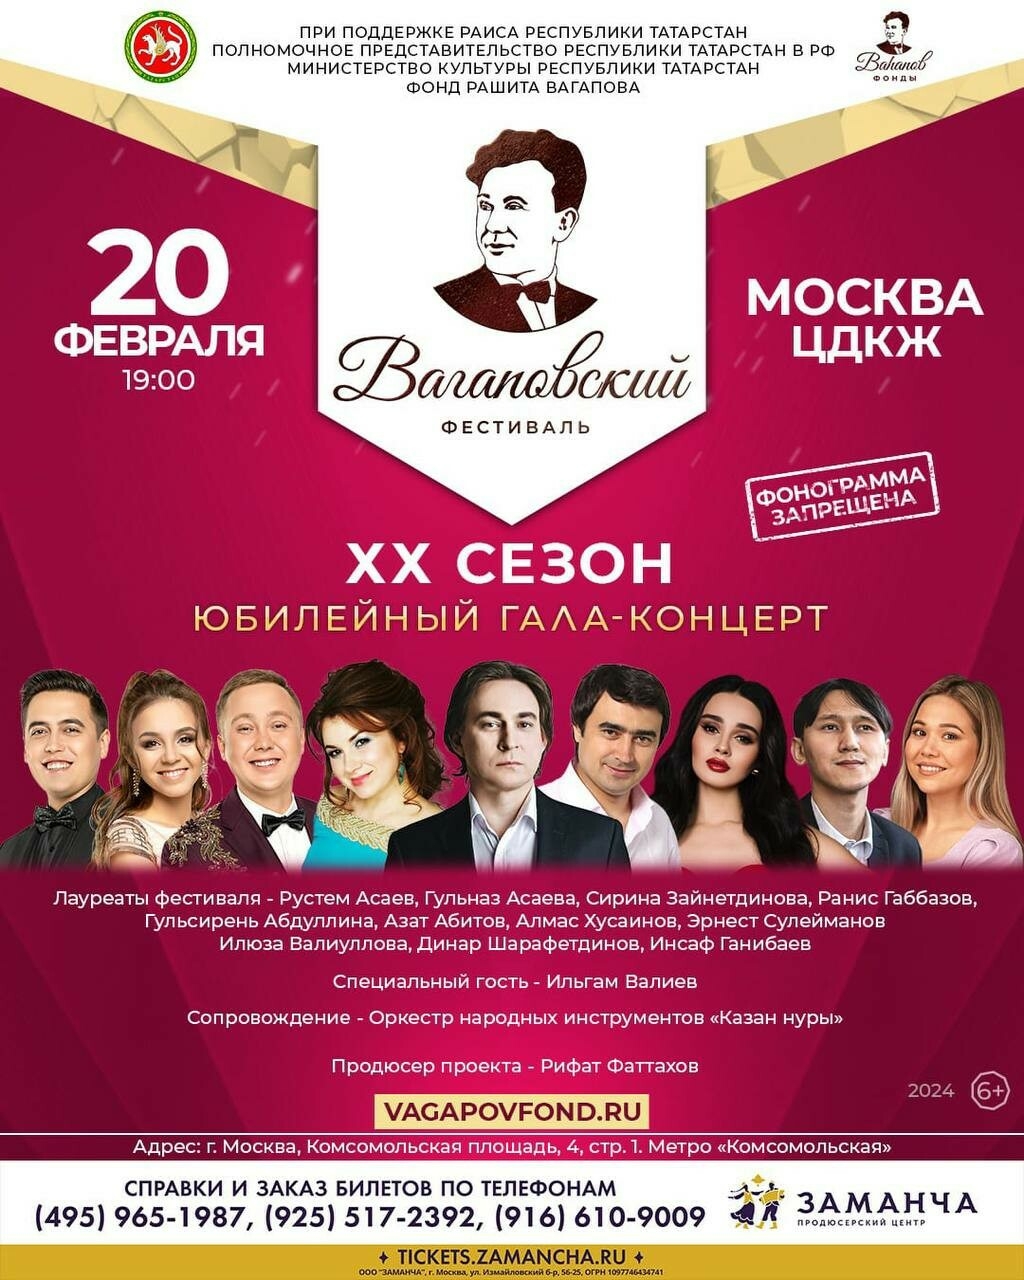 Народные артисты Татарстана выступят на гала-концерте фестиваля Вагапова в Москве